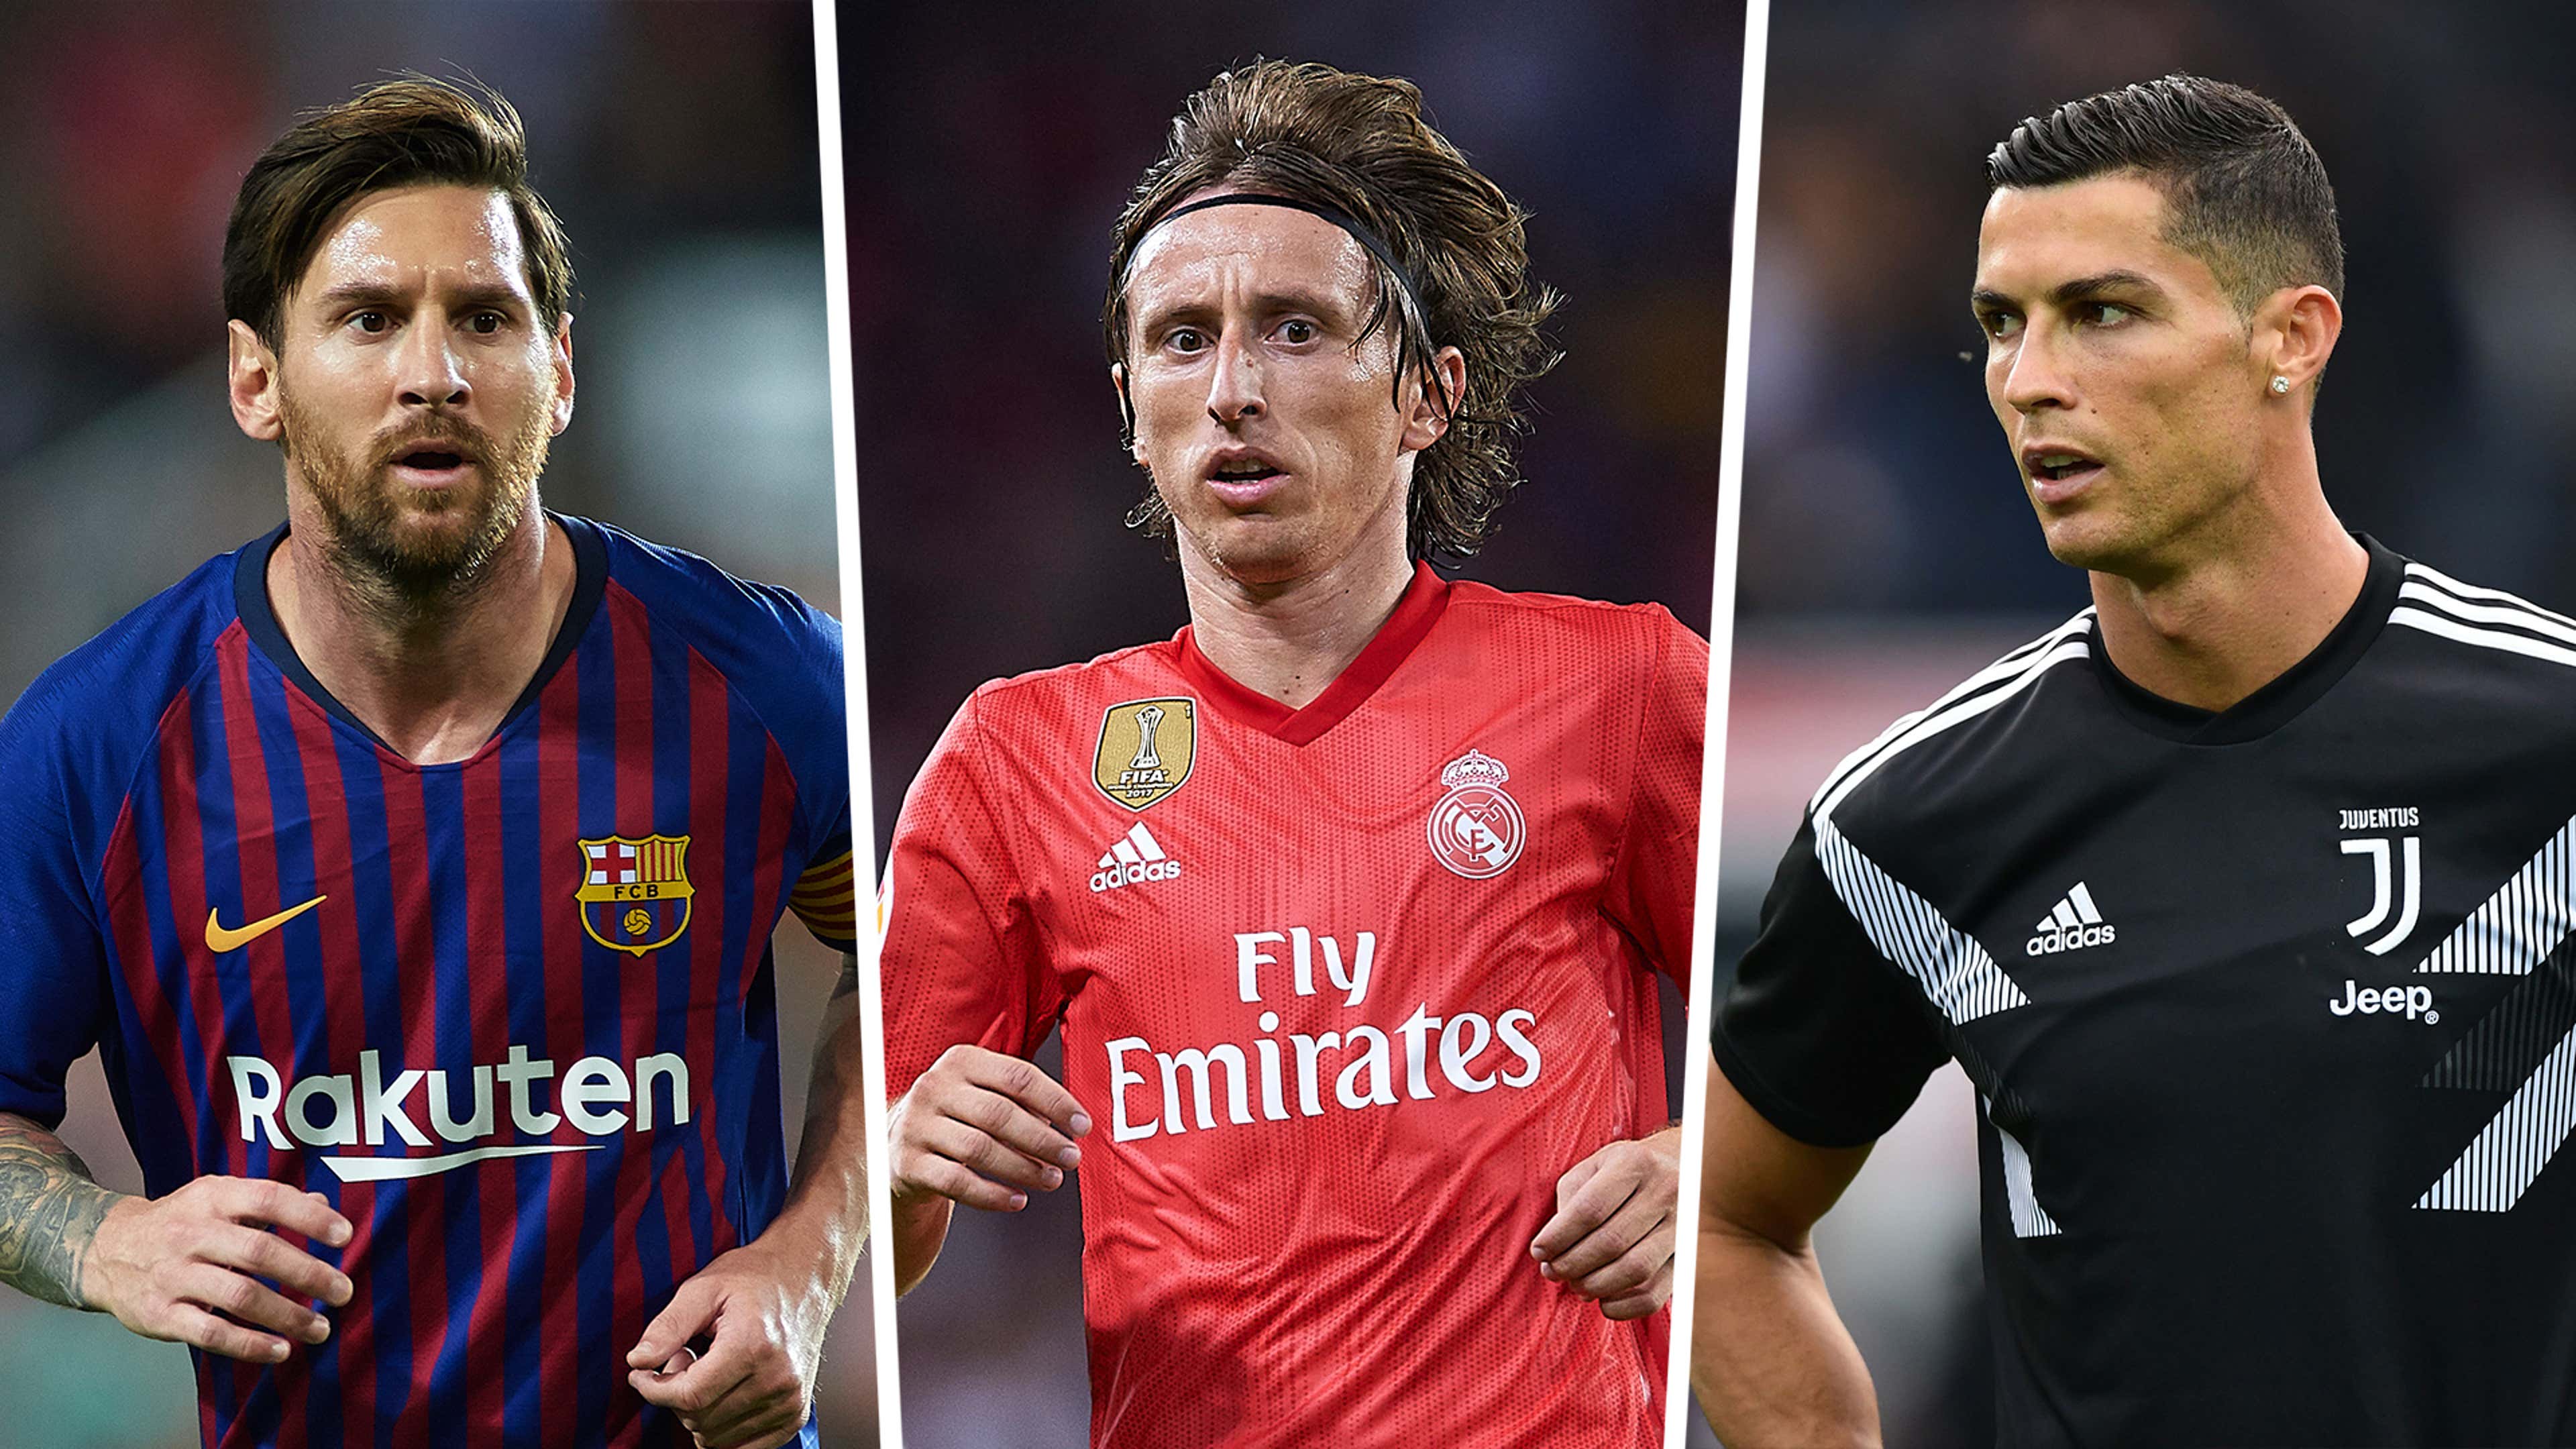 Nem CR7, nem Messi o melhor jogador do mundo atualmente é Modric